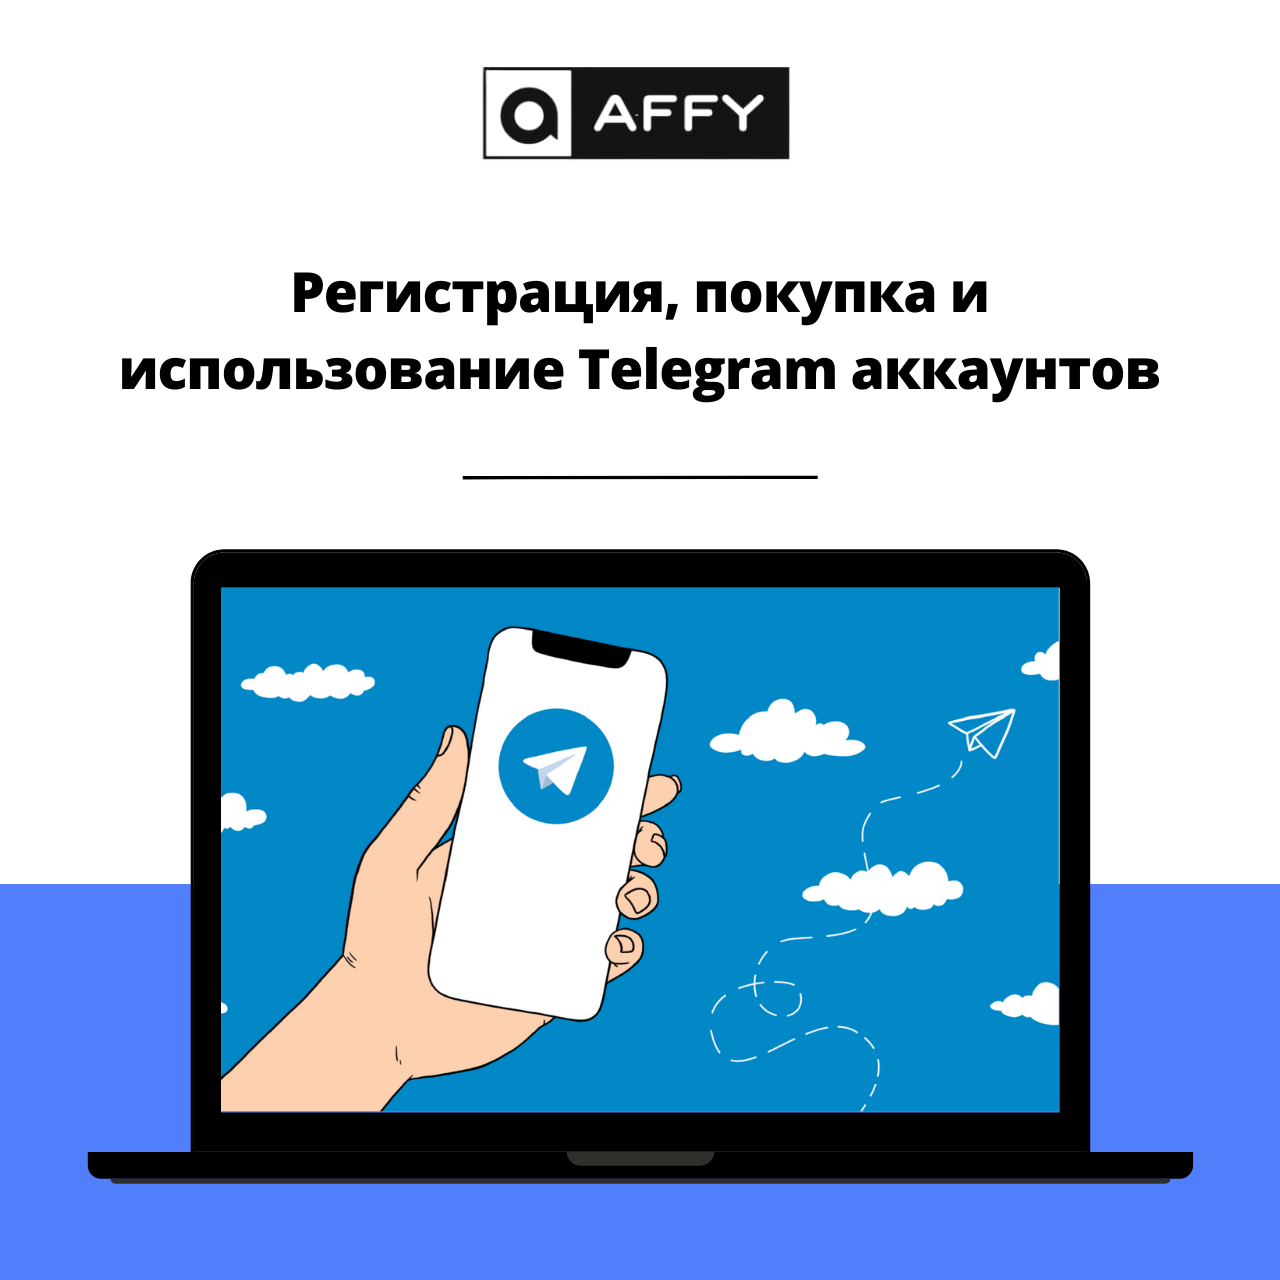 Как восстановить аккаунт в телеграмм если потерял телефон фото 118